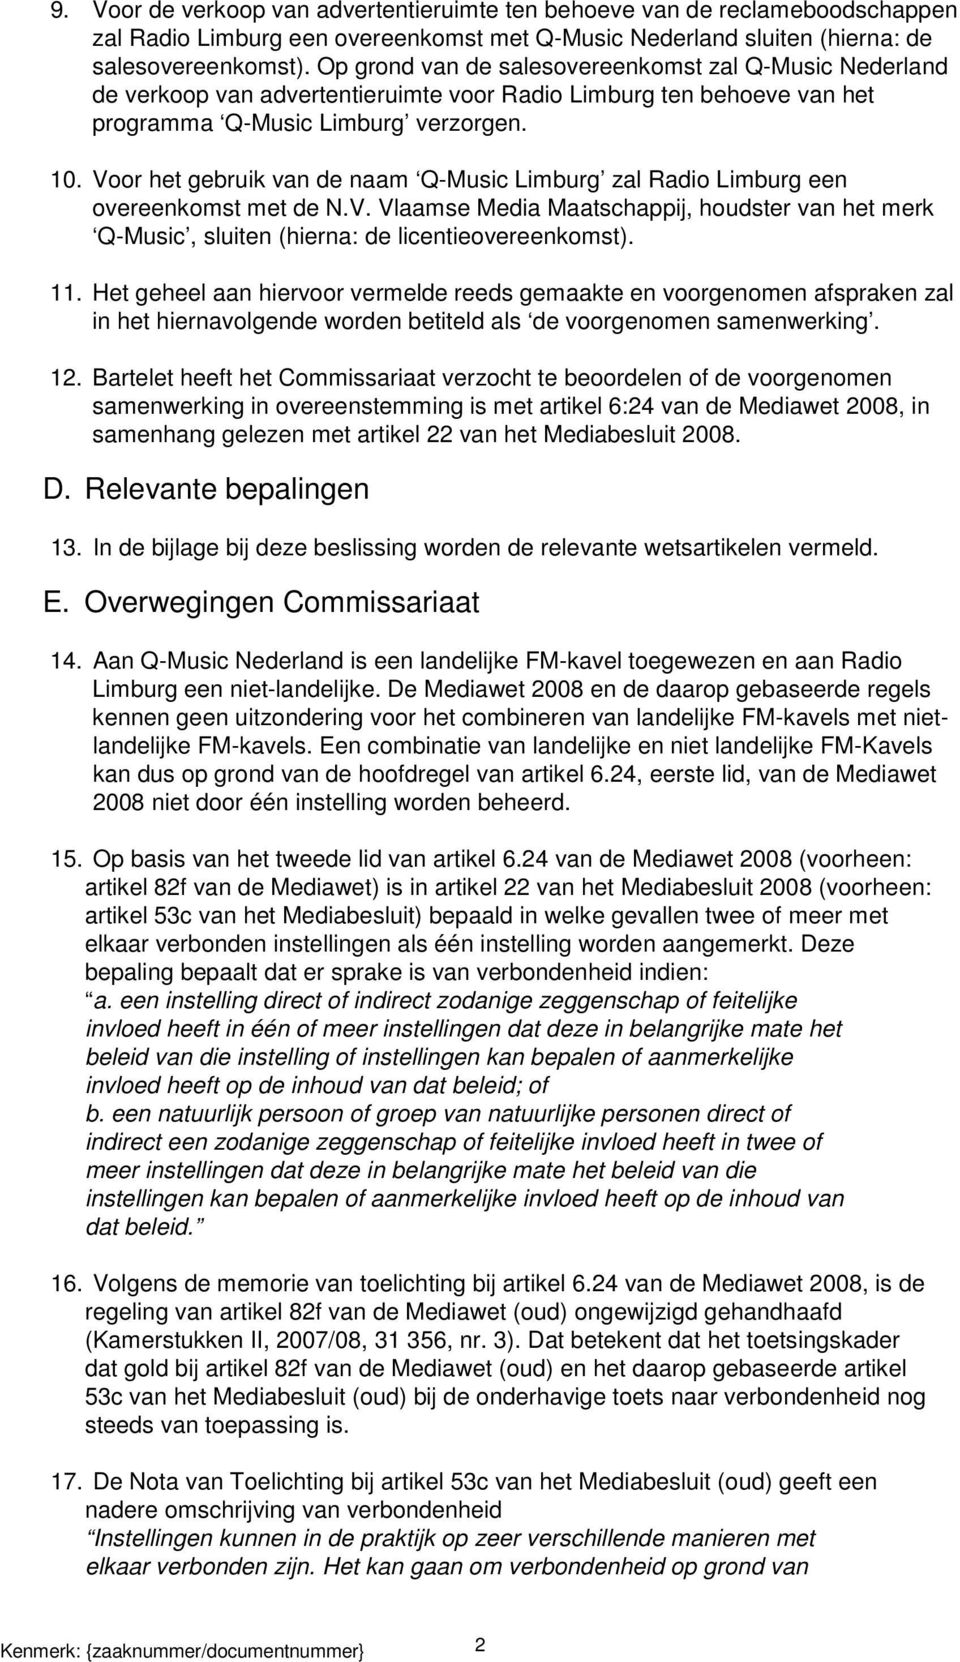 Voor het gebruik van de naam Q-Music Limburg zal Radio Limburg een overeenkomst met de N.V. Vlaamse Media Maatschappij, houdster van het merk Q-Music, sluiten (hierna: de licentieovereenkomst). 11.